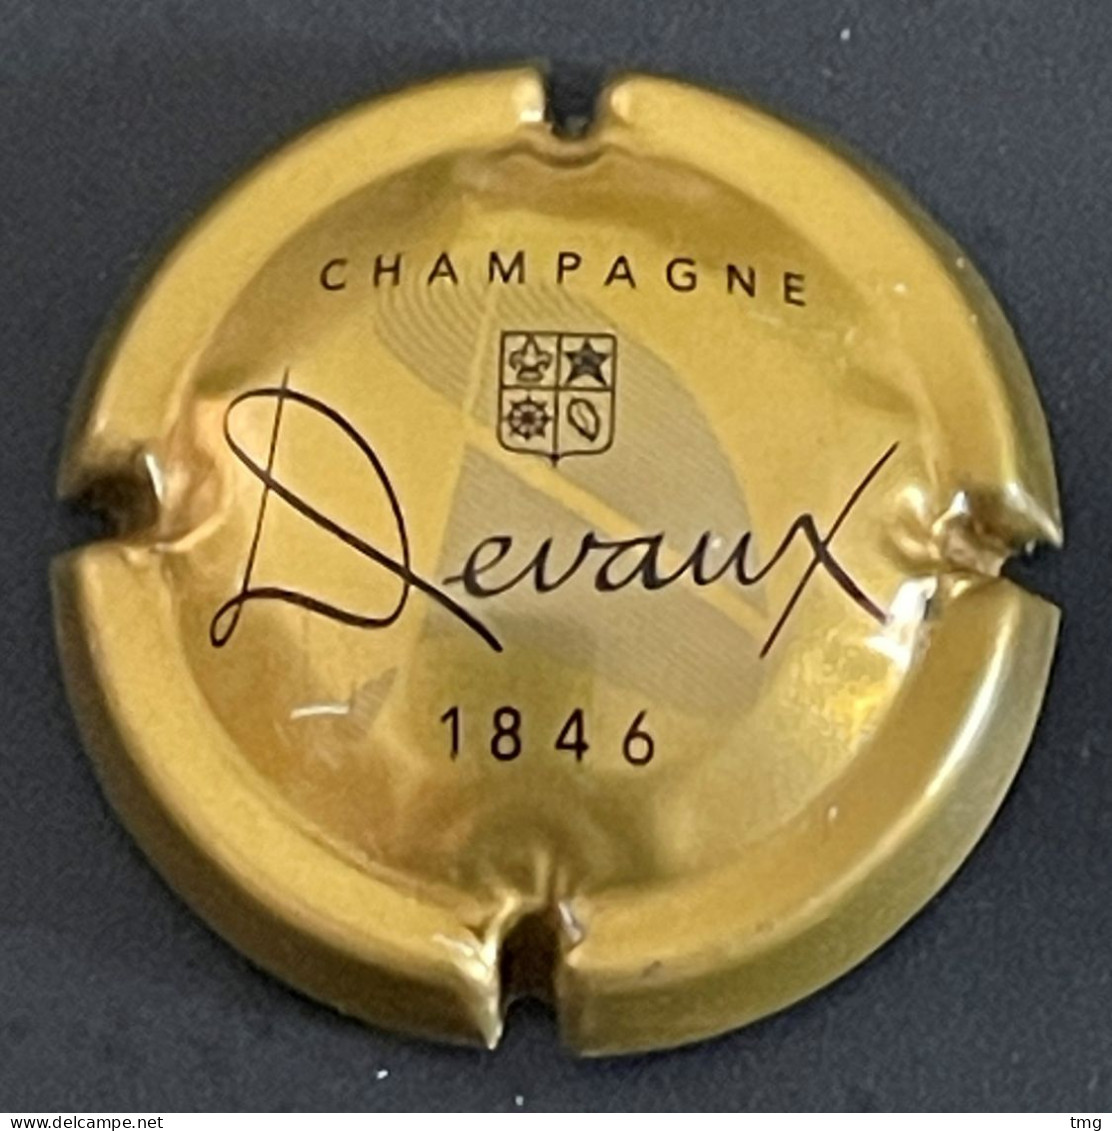 23 - 16 - Devaux, Or-bronze, Gris Et Noir, Sans Carré, 1846 (côte 1,5 Euros) Capsule De Champagne - Devaux